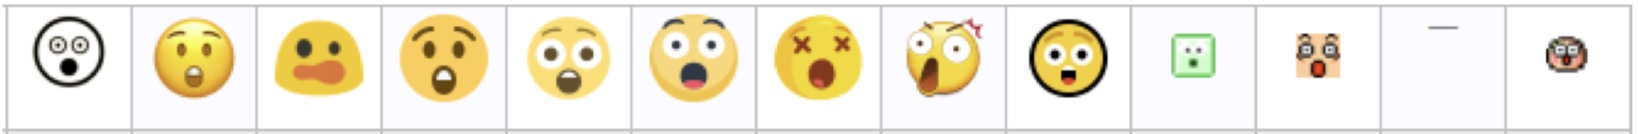 emoji_face